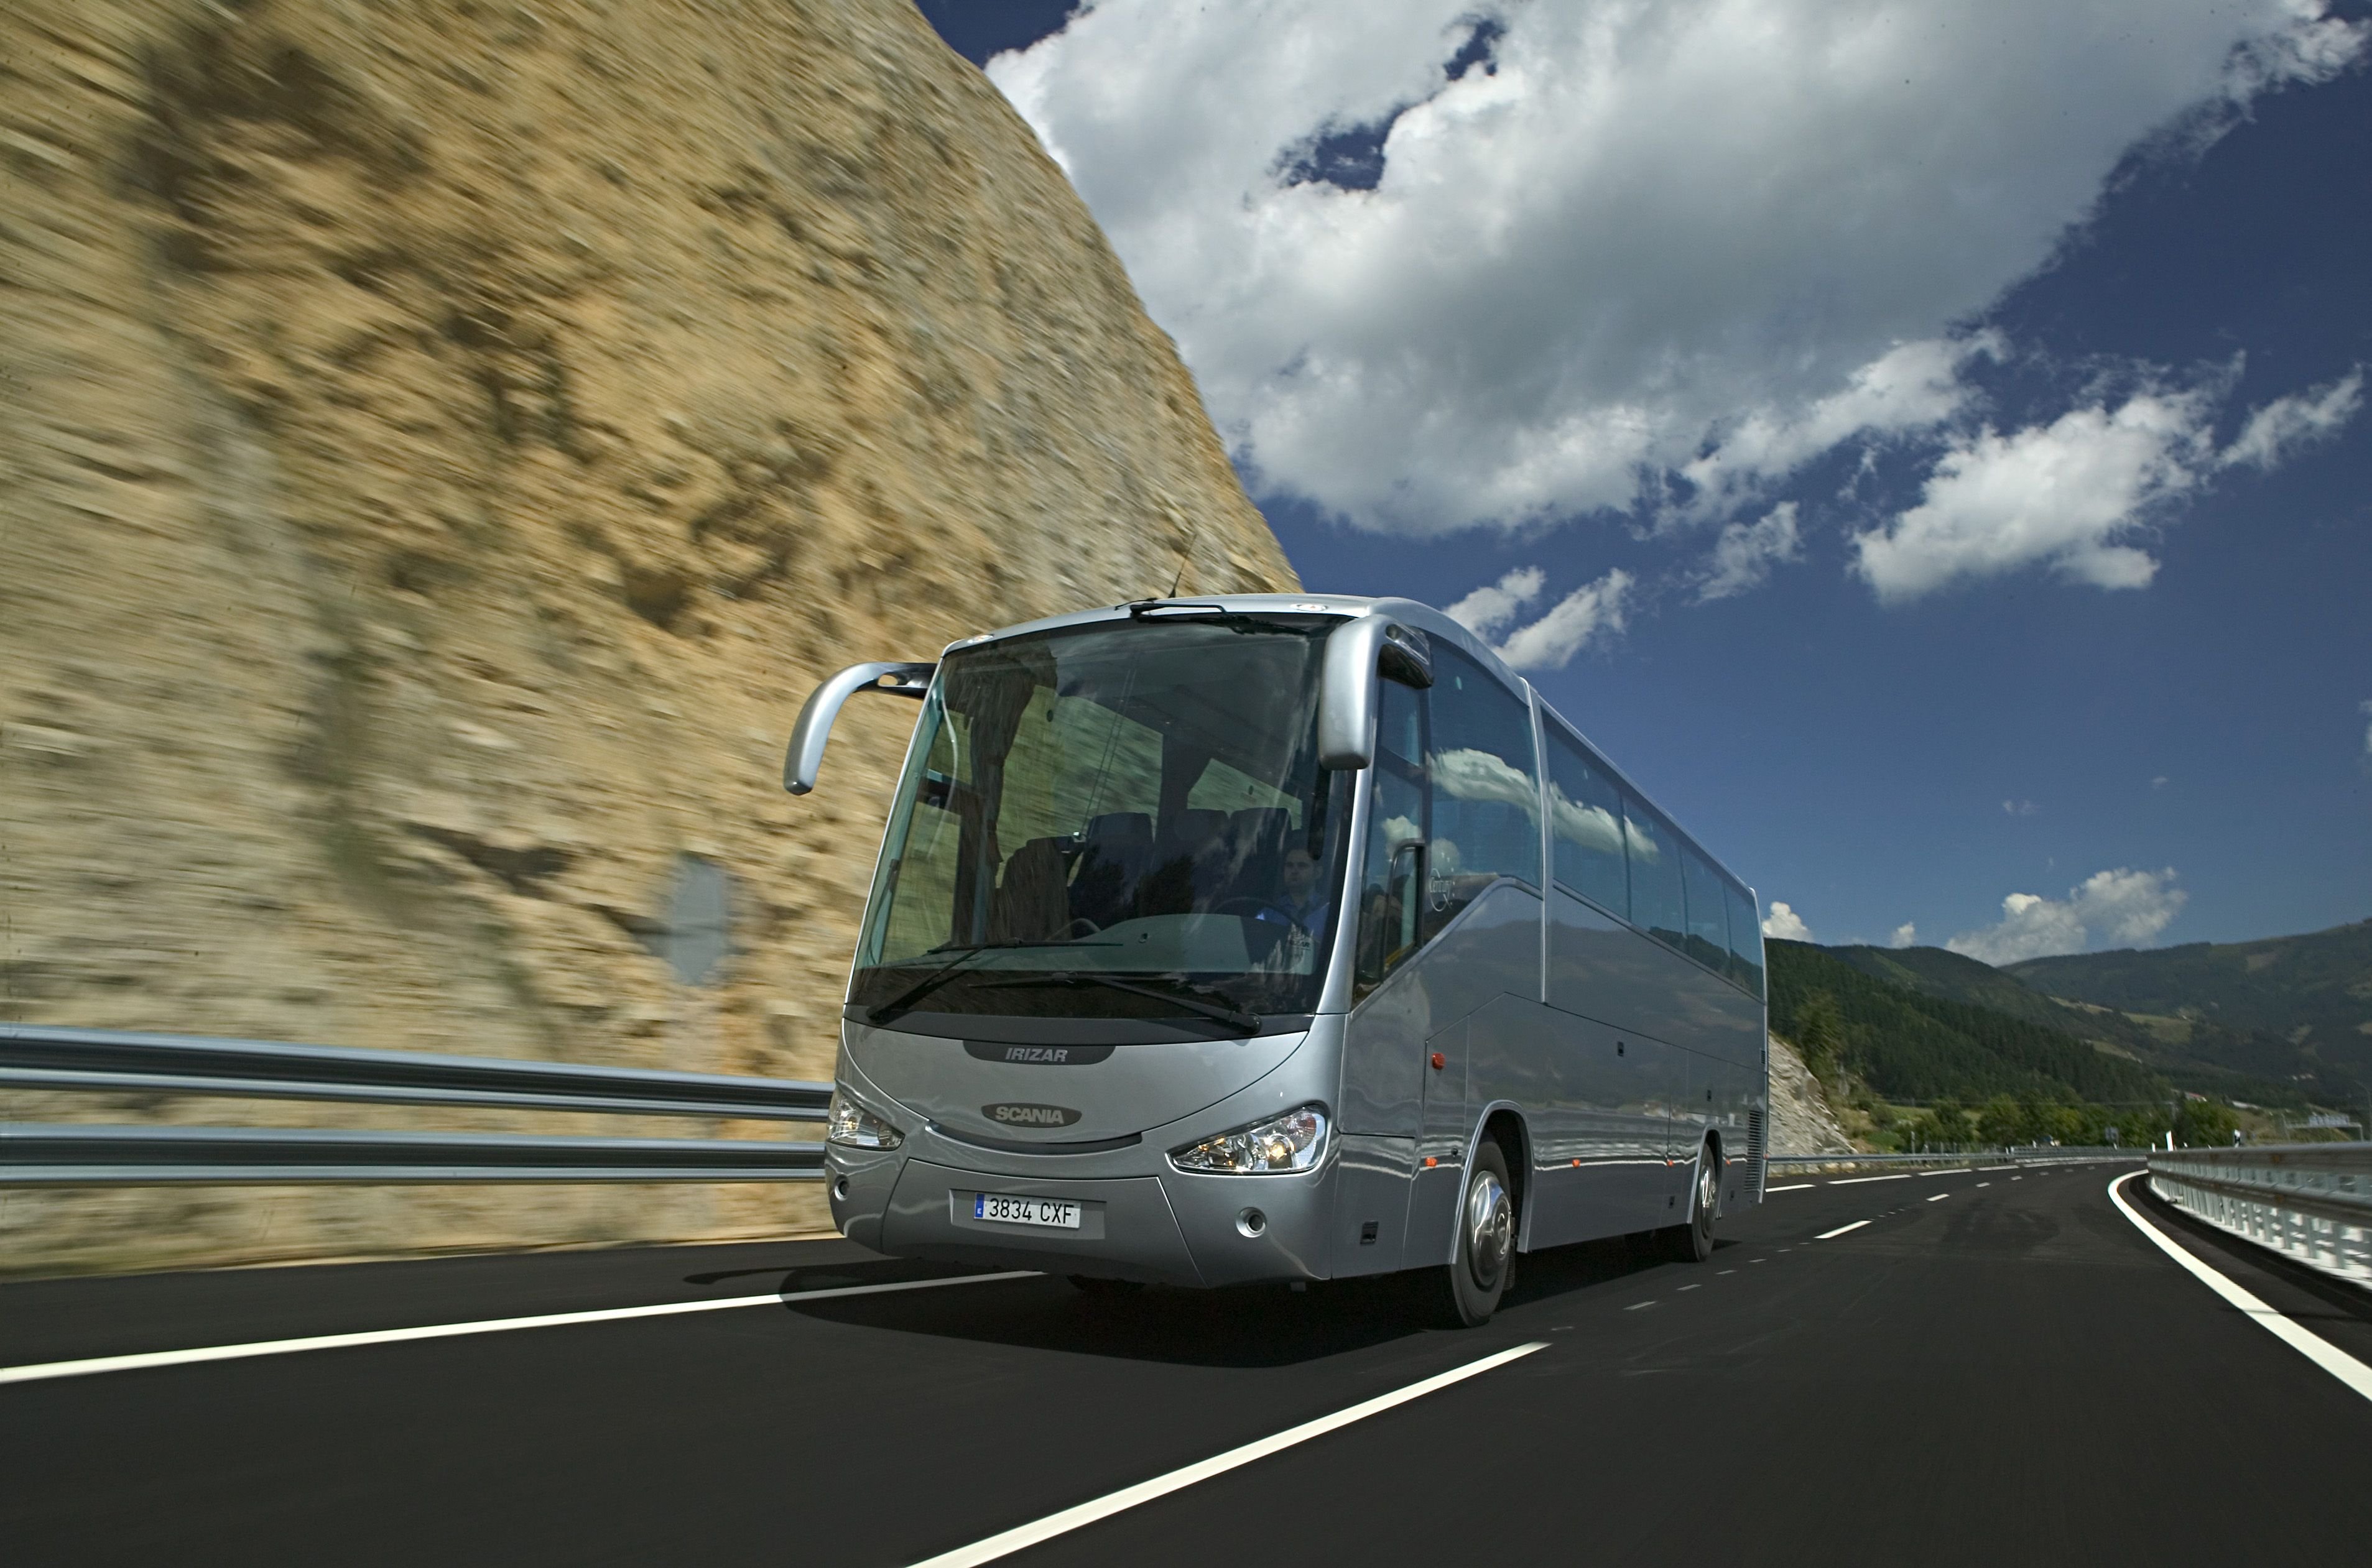 Планируете поездку на автобусе из Белоруссии в Германию? «Интеркарс» к вашим услугам